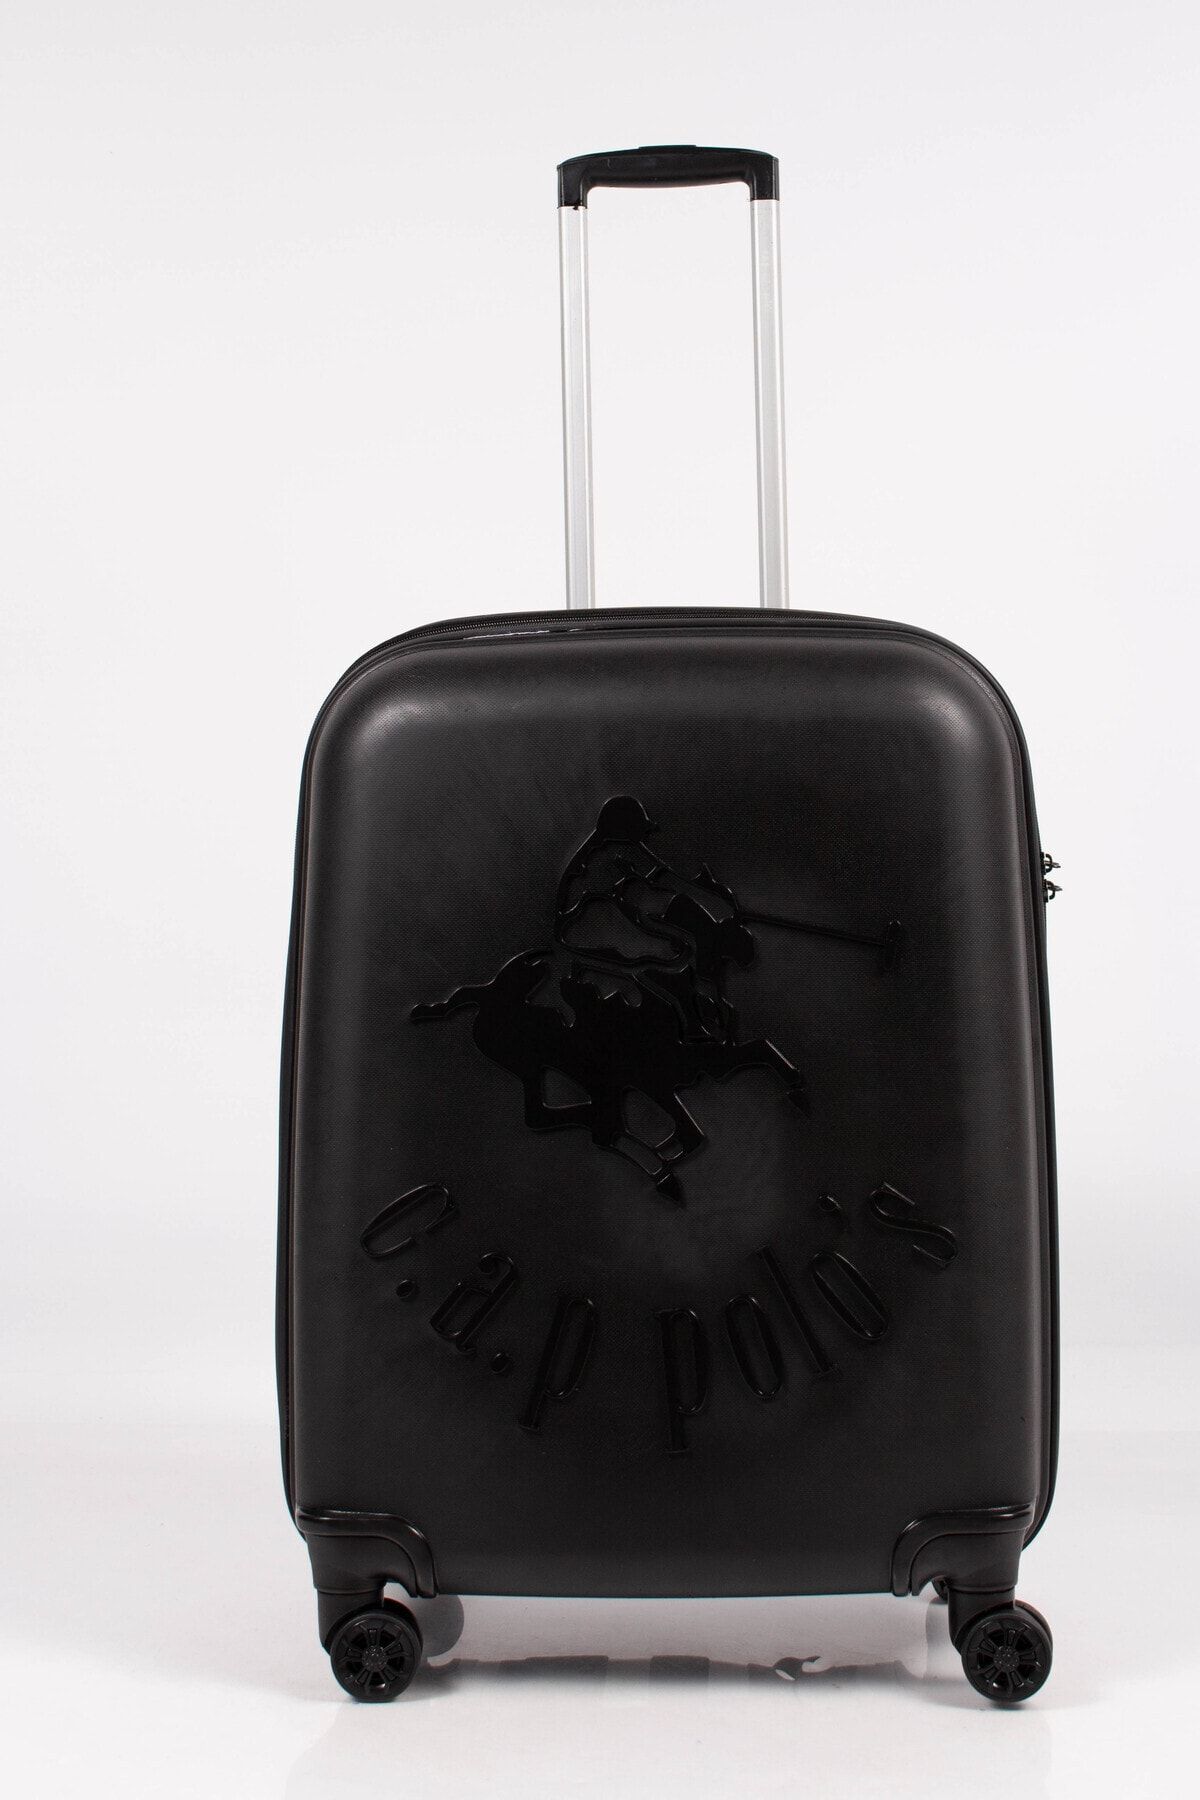 KAFF Albatros Cap Polo's Unisex Siyah PP525 (Black) 4 Teker PP Kırılmaz Orta Boy Valiz Bavul